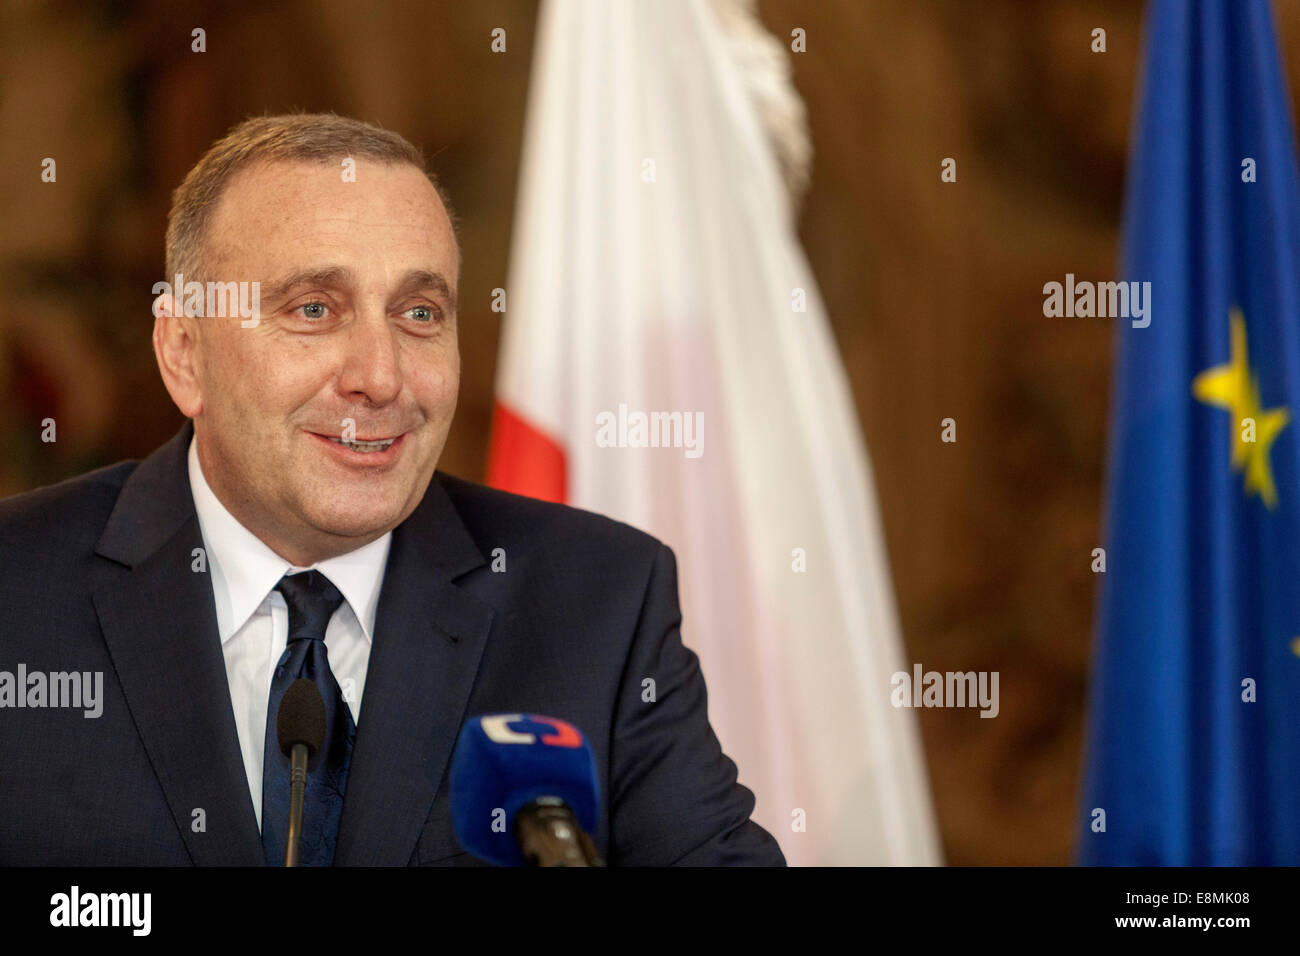 Praga, República Checa. 10 de octubre de 2014 Grzegorz Schetyna, Ministro de Relaciones Exteriores de Polonia, durante una conferencia de prensa. Foto de stock